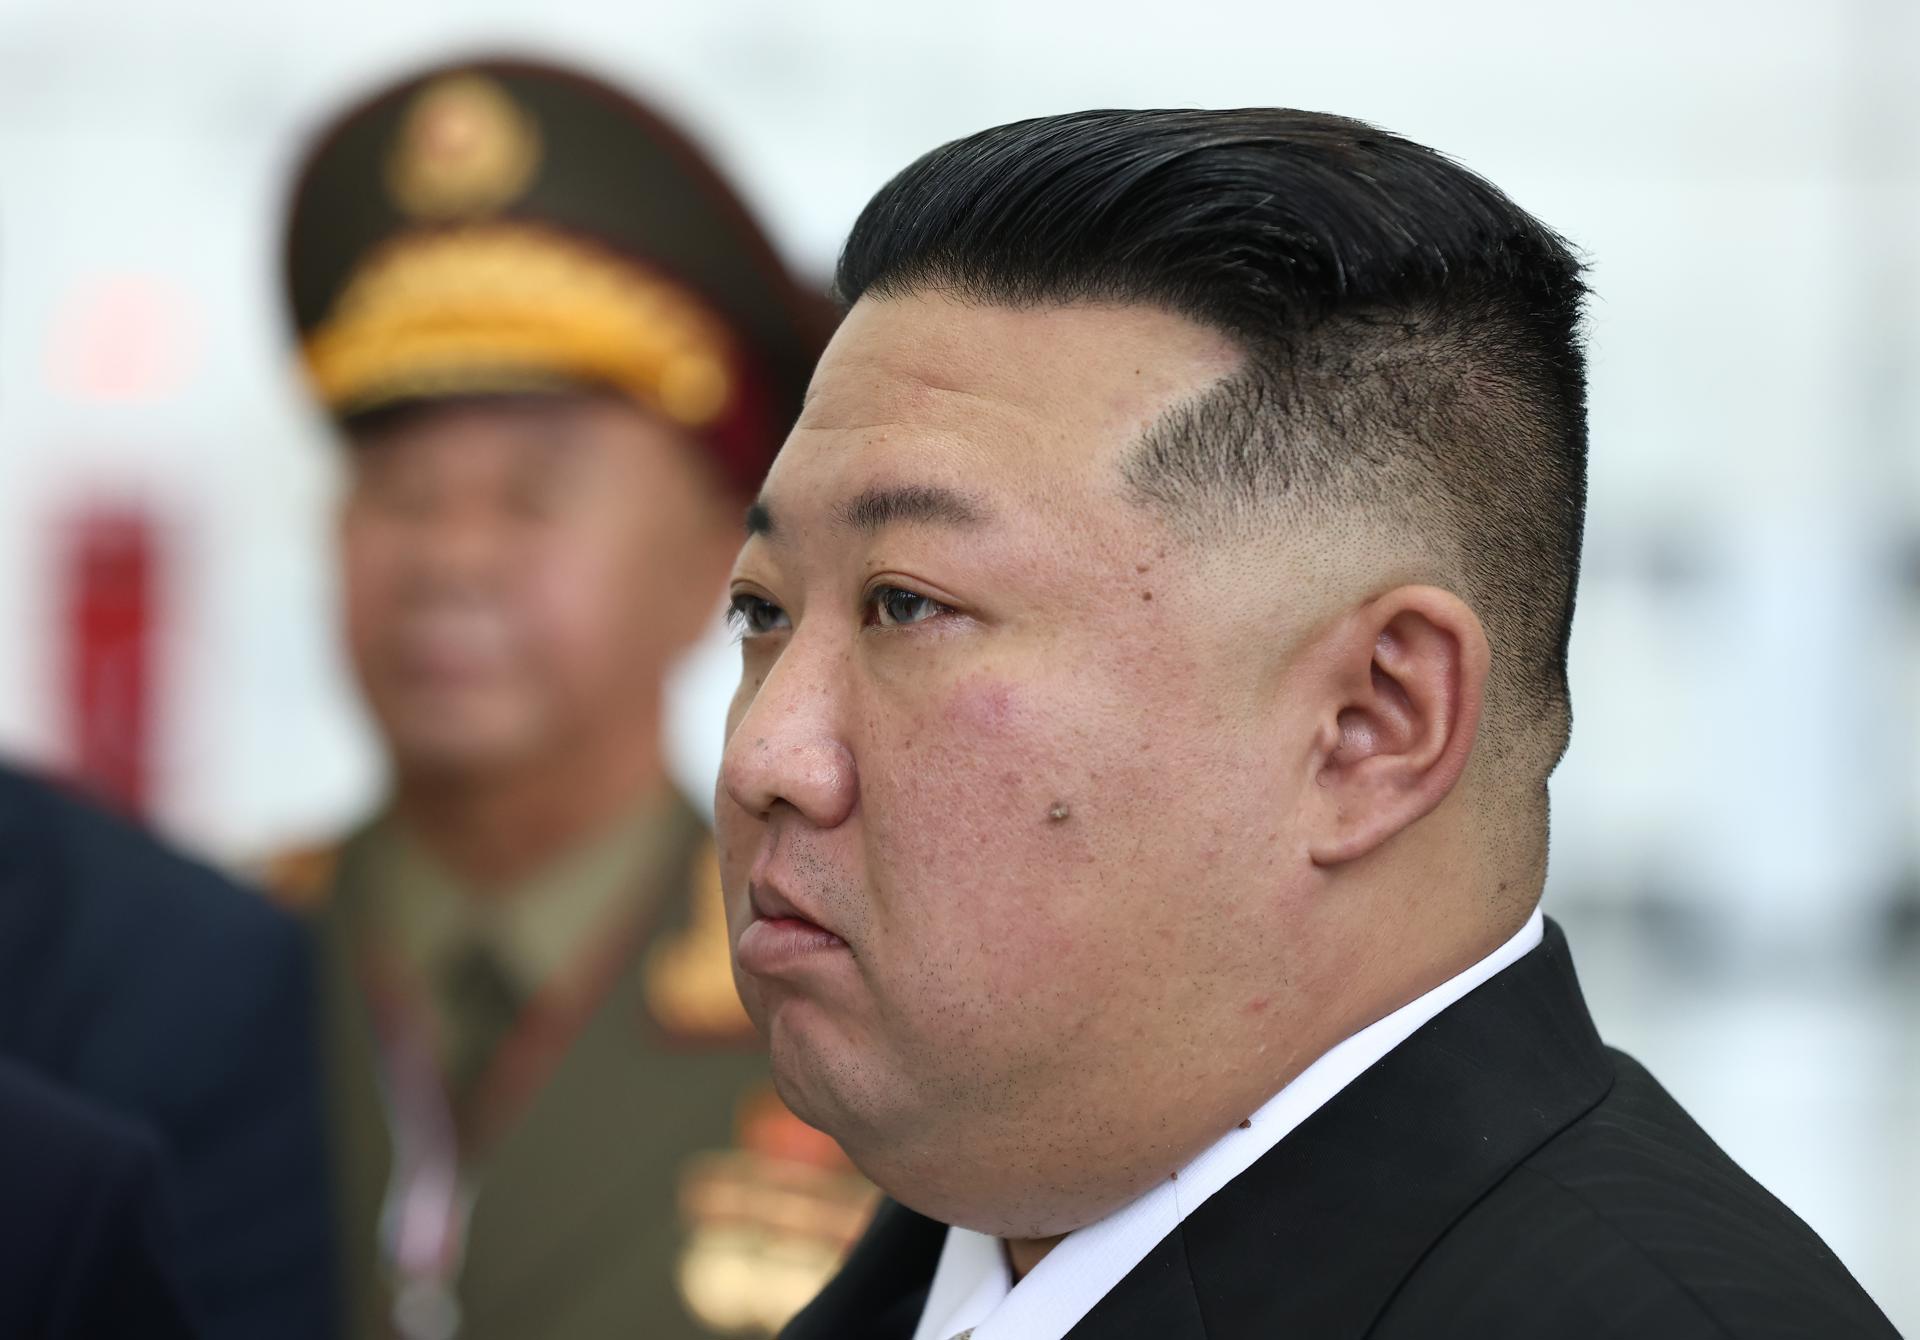 El líder norcoreano Kim Jong-un, en una fotografía de archivo. EFE/EPA/Artem Geodakyan/Sputnik/Kremlin